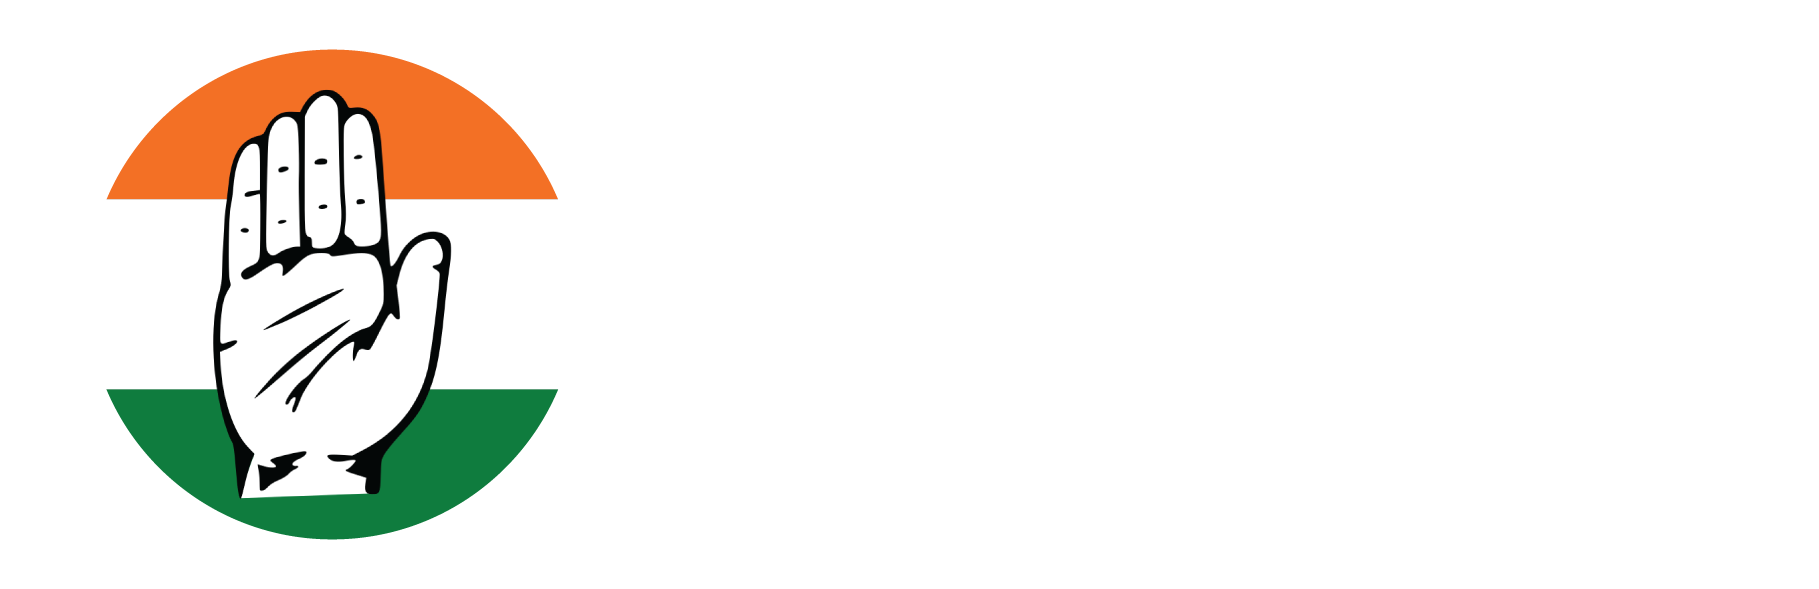 satyveer_logo 9-01